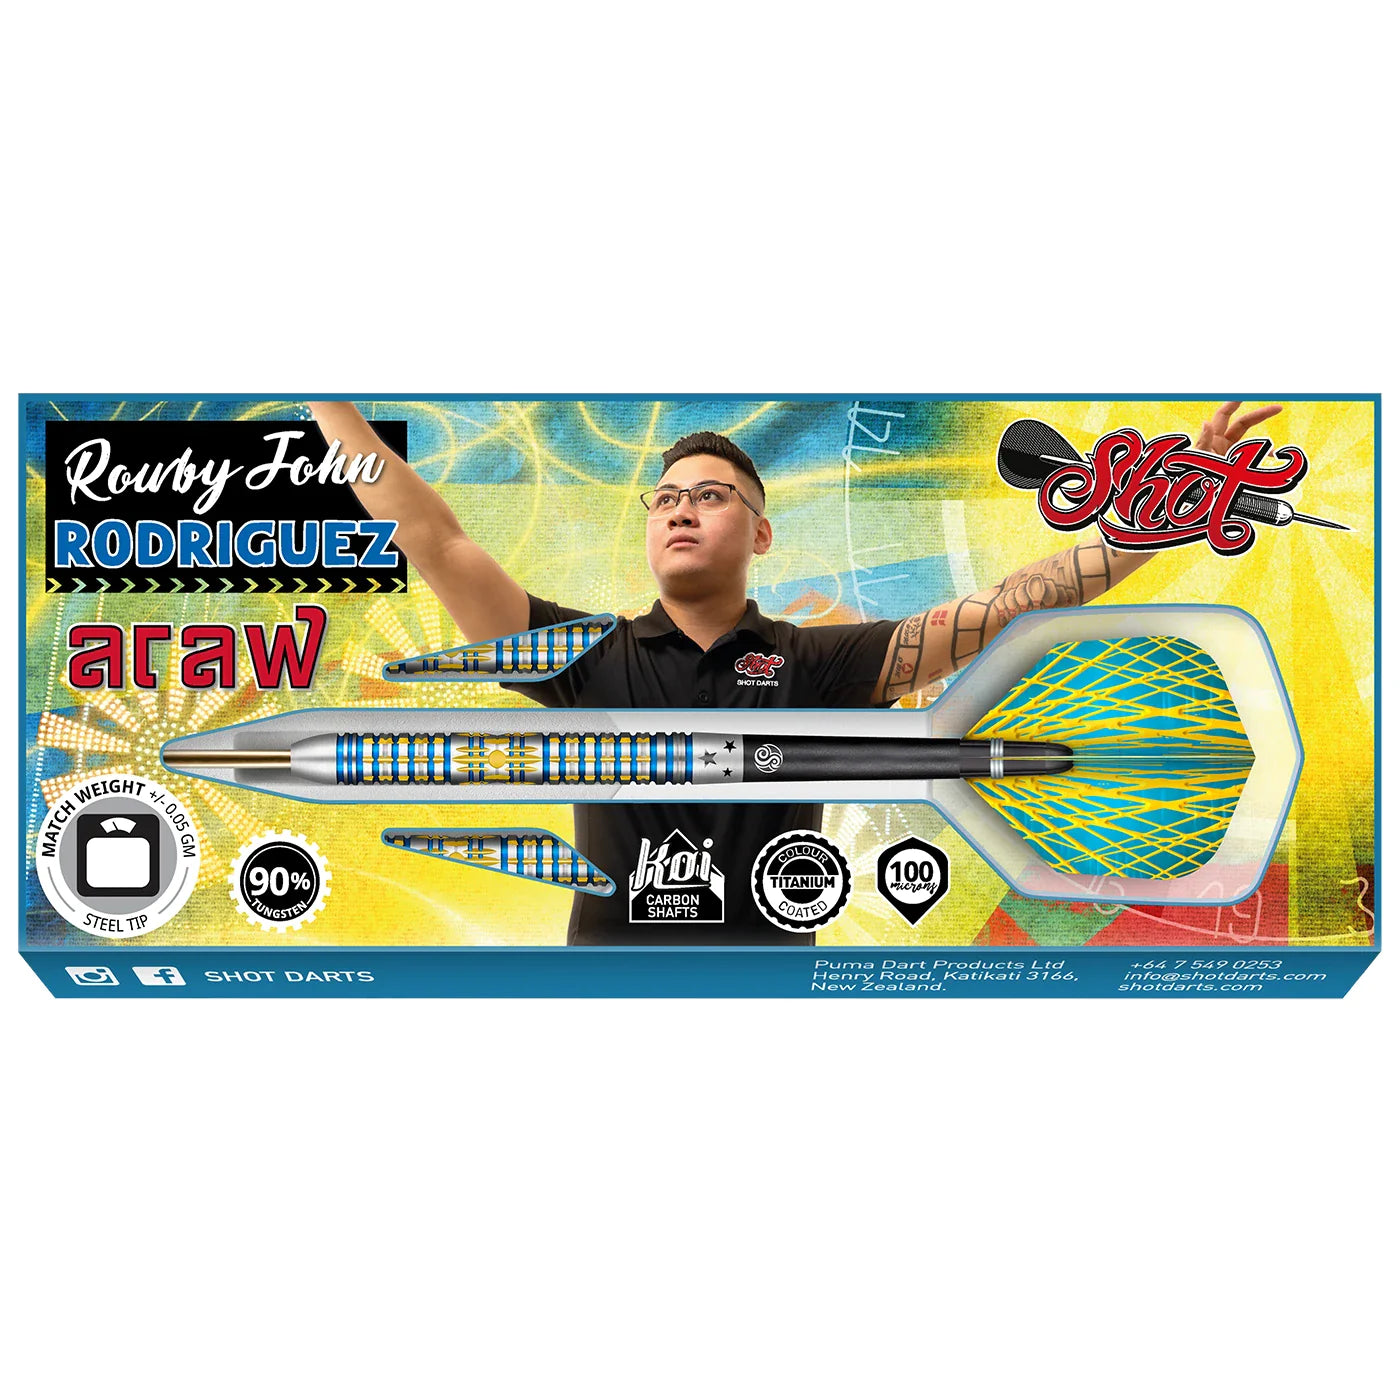 Shot Rowby-John Rodriguez Araw 22g 90% Tungsten Steel Tip Darts